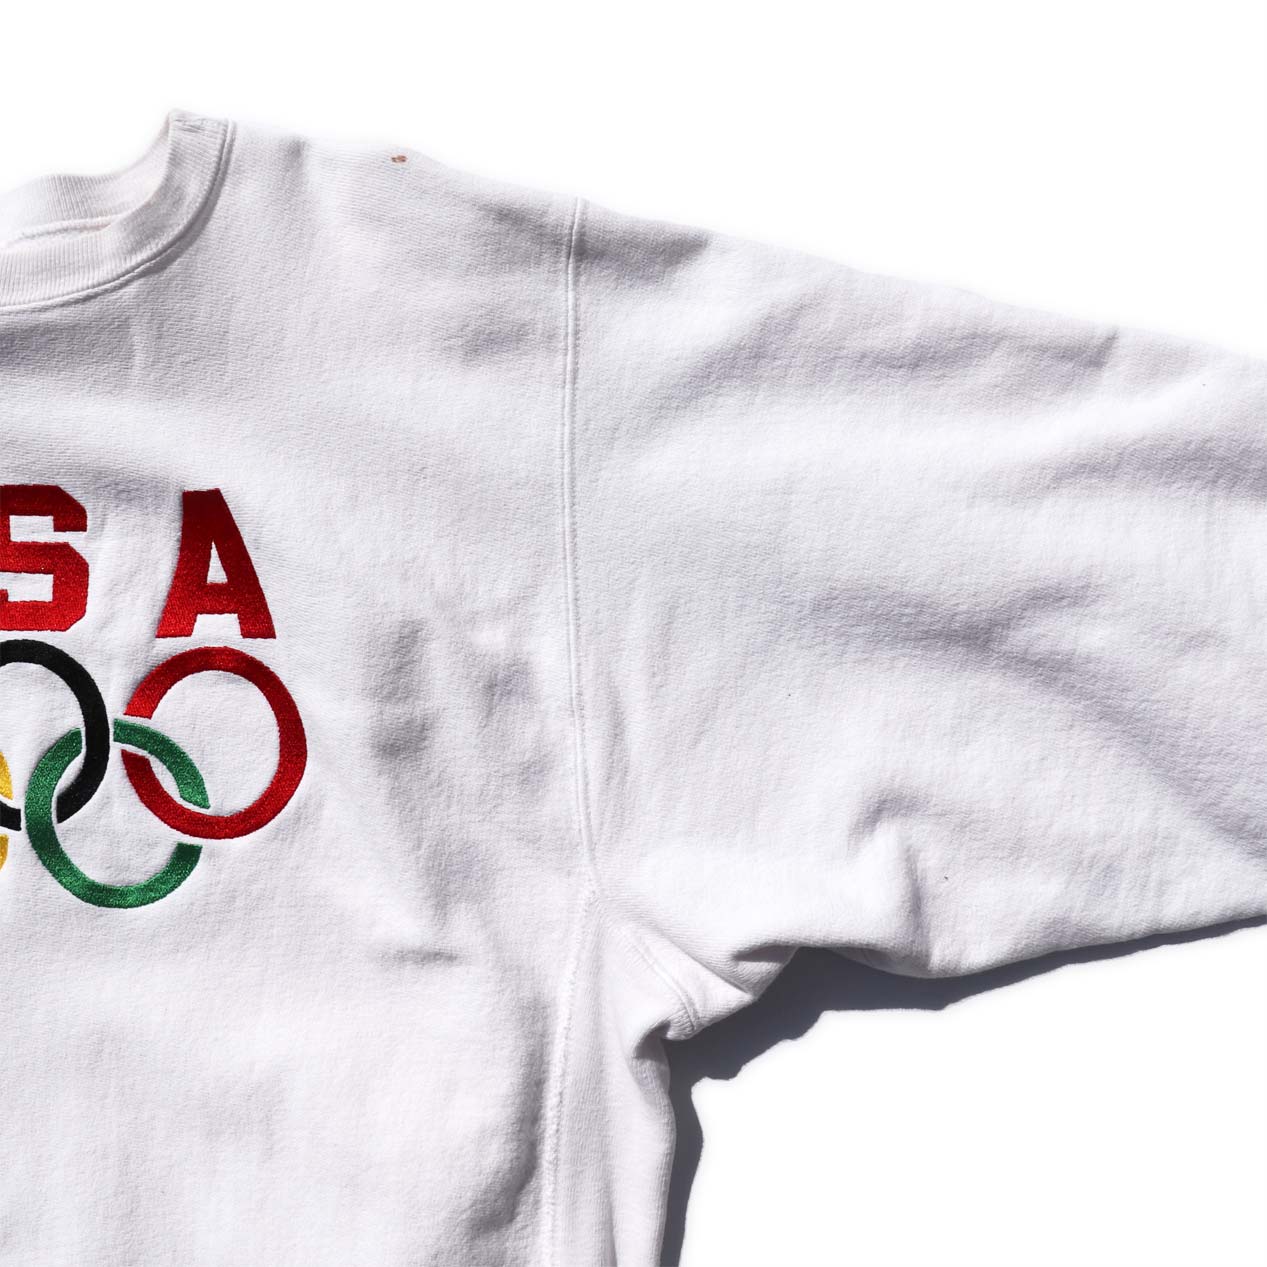 新座店 【90's vintage】USA オリンピック チャンピオンリバースウィーブ スウェット